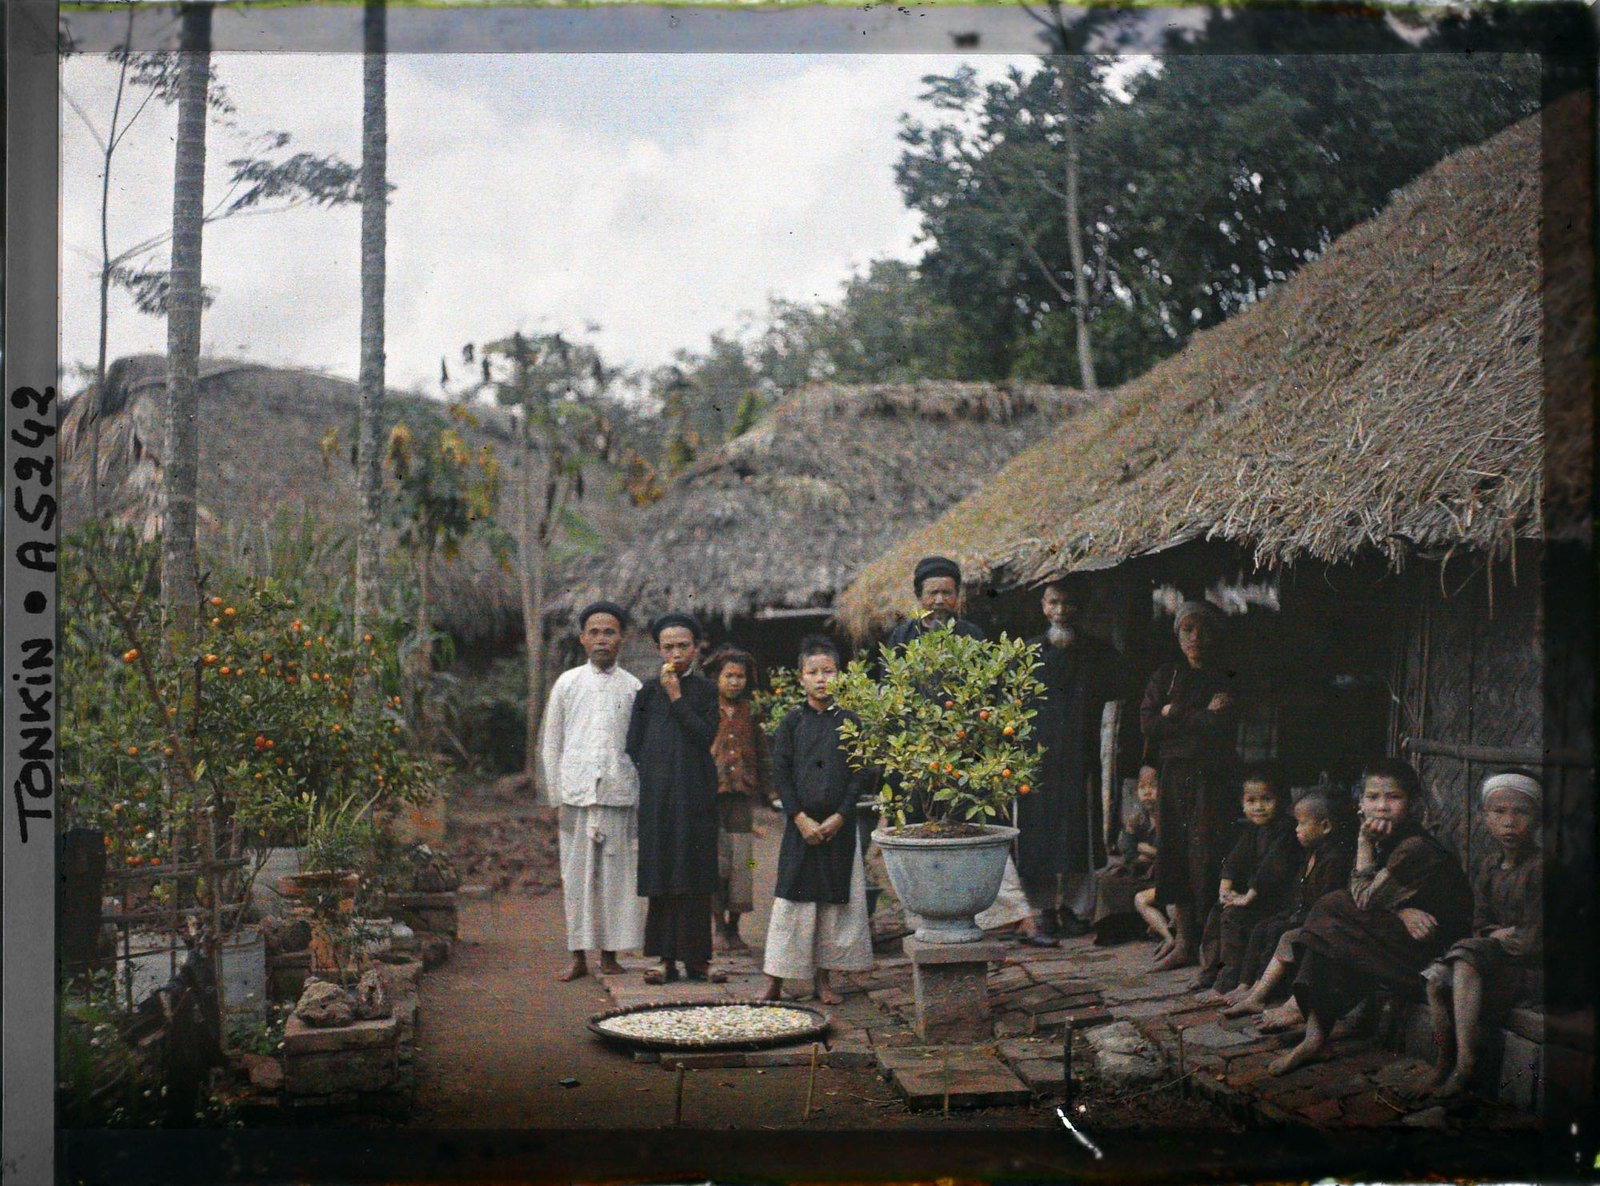 Ngoại thành Hà Nội đầu thế kỷ 20 qua loạt ảnh màu tuyệt đẹp